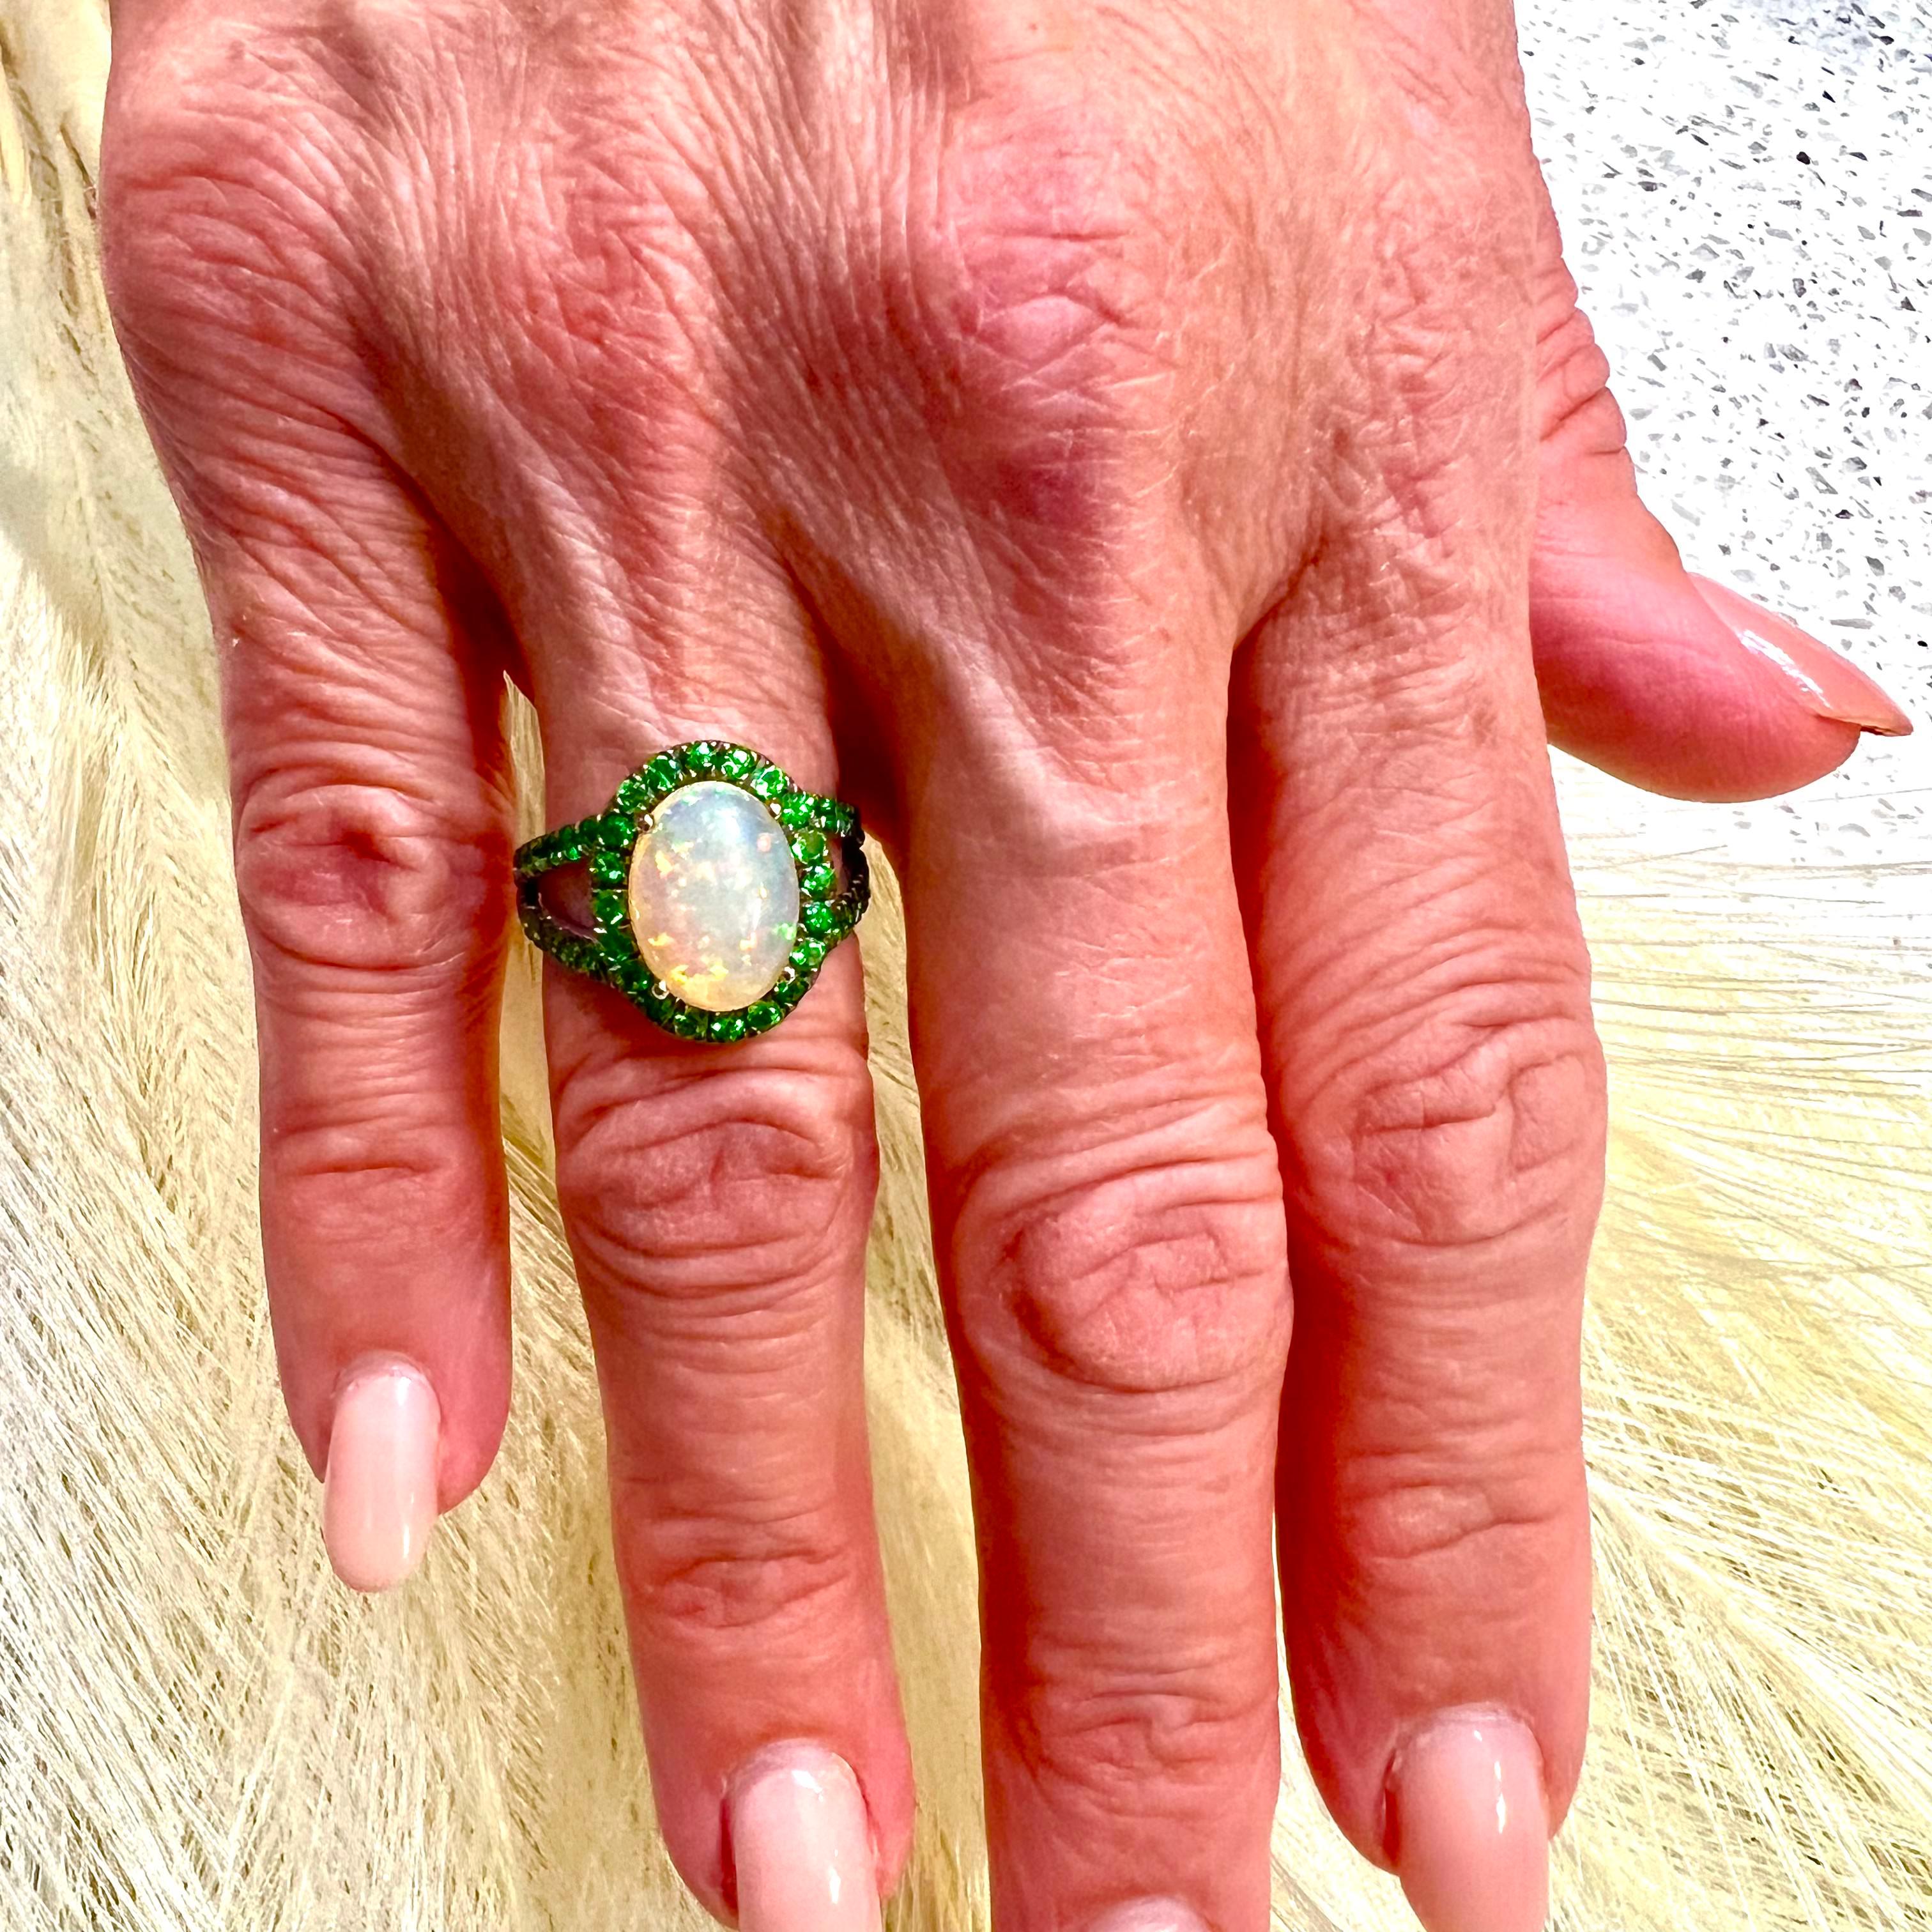 Natürliche Qualität Opal Tsavorit Ring Größe 7 14k Gold 5,66 TCW zertifiziert $5.950 300686

Dies ist ein einzigartiges, maßgeschneidertes, glamouröses Schmuckstück!

Nichts sagt mehr 